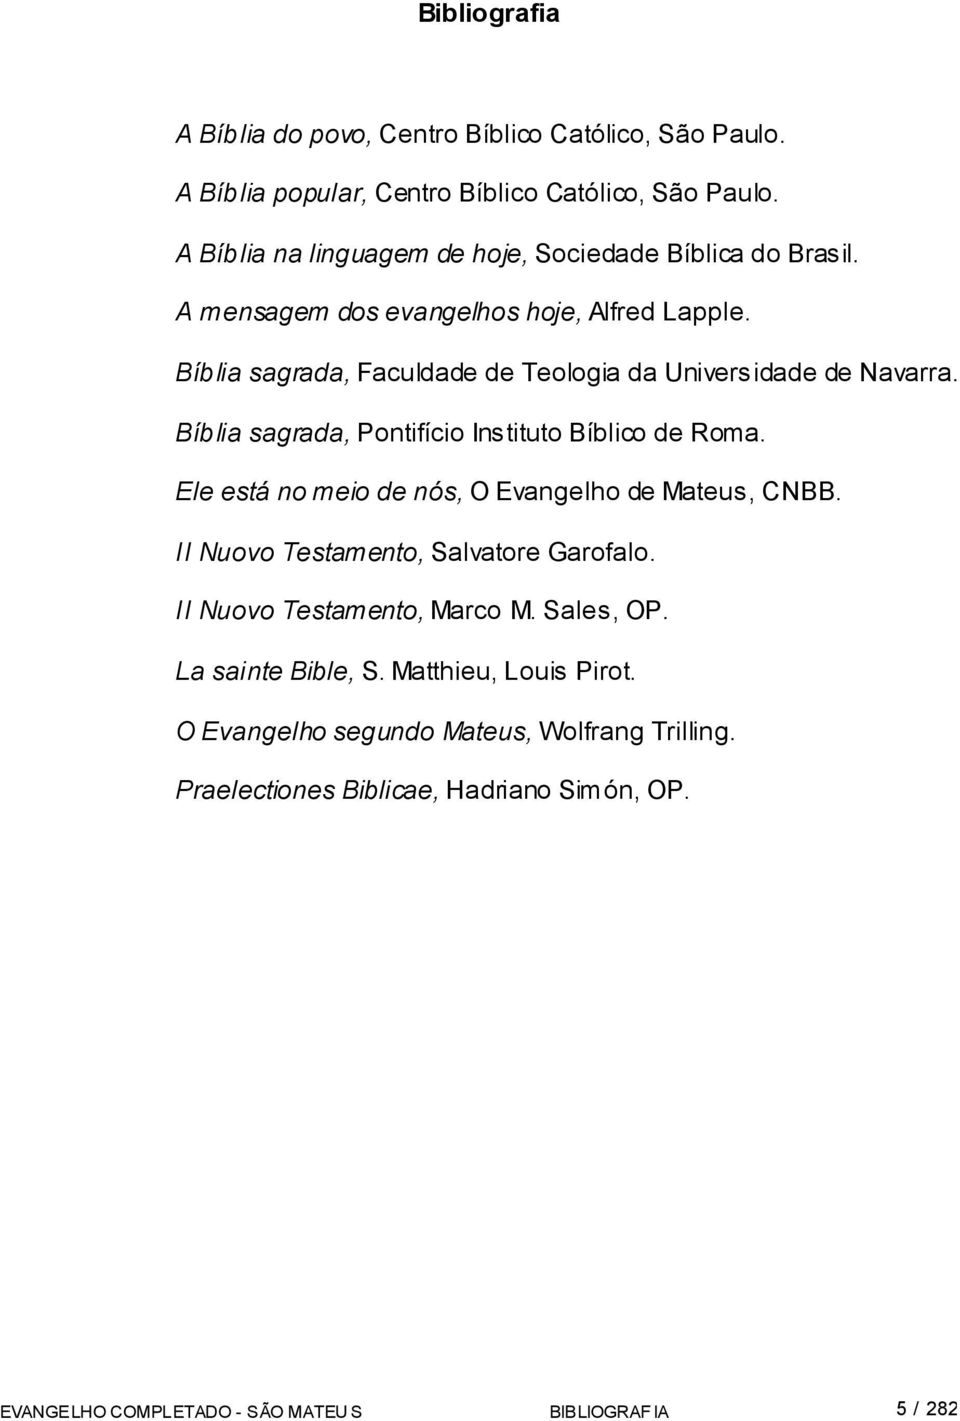 Bíblia sagrada, Faculdade de Teologia da Universidade de Navarra. Bíblia sagrada, Pontifício Instituto Bíblico de Roma.